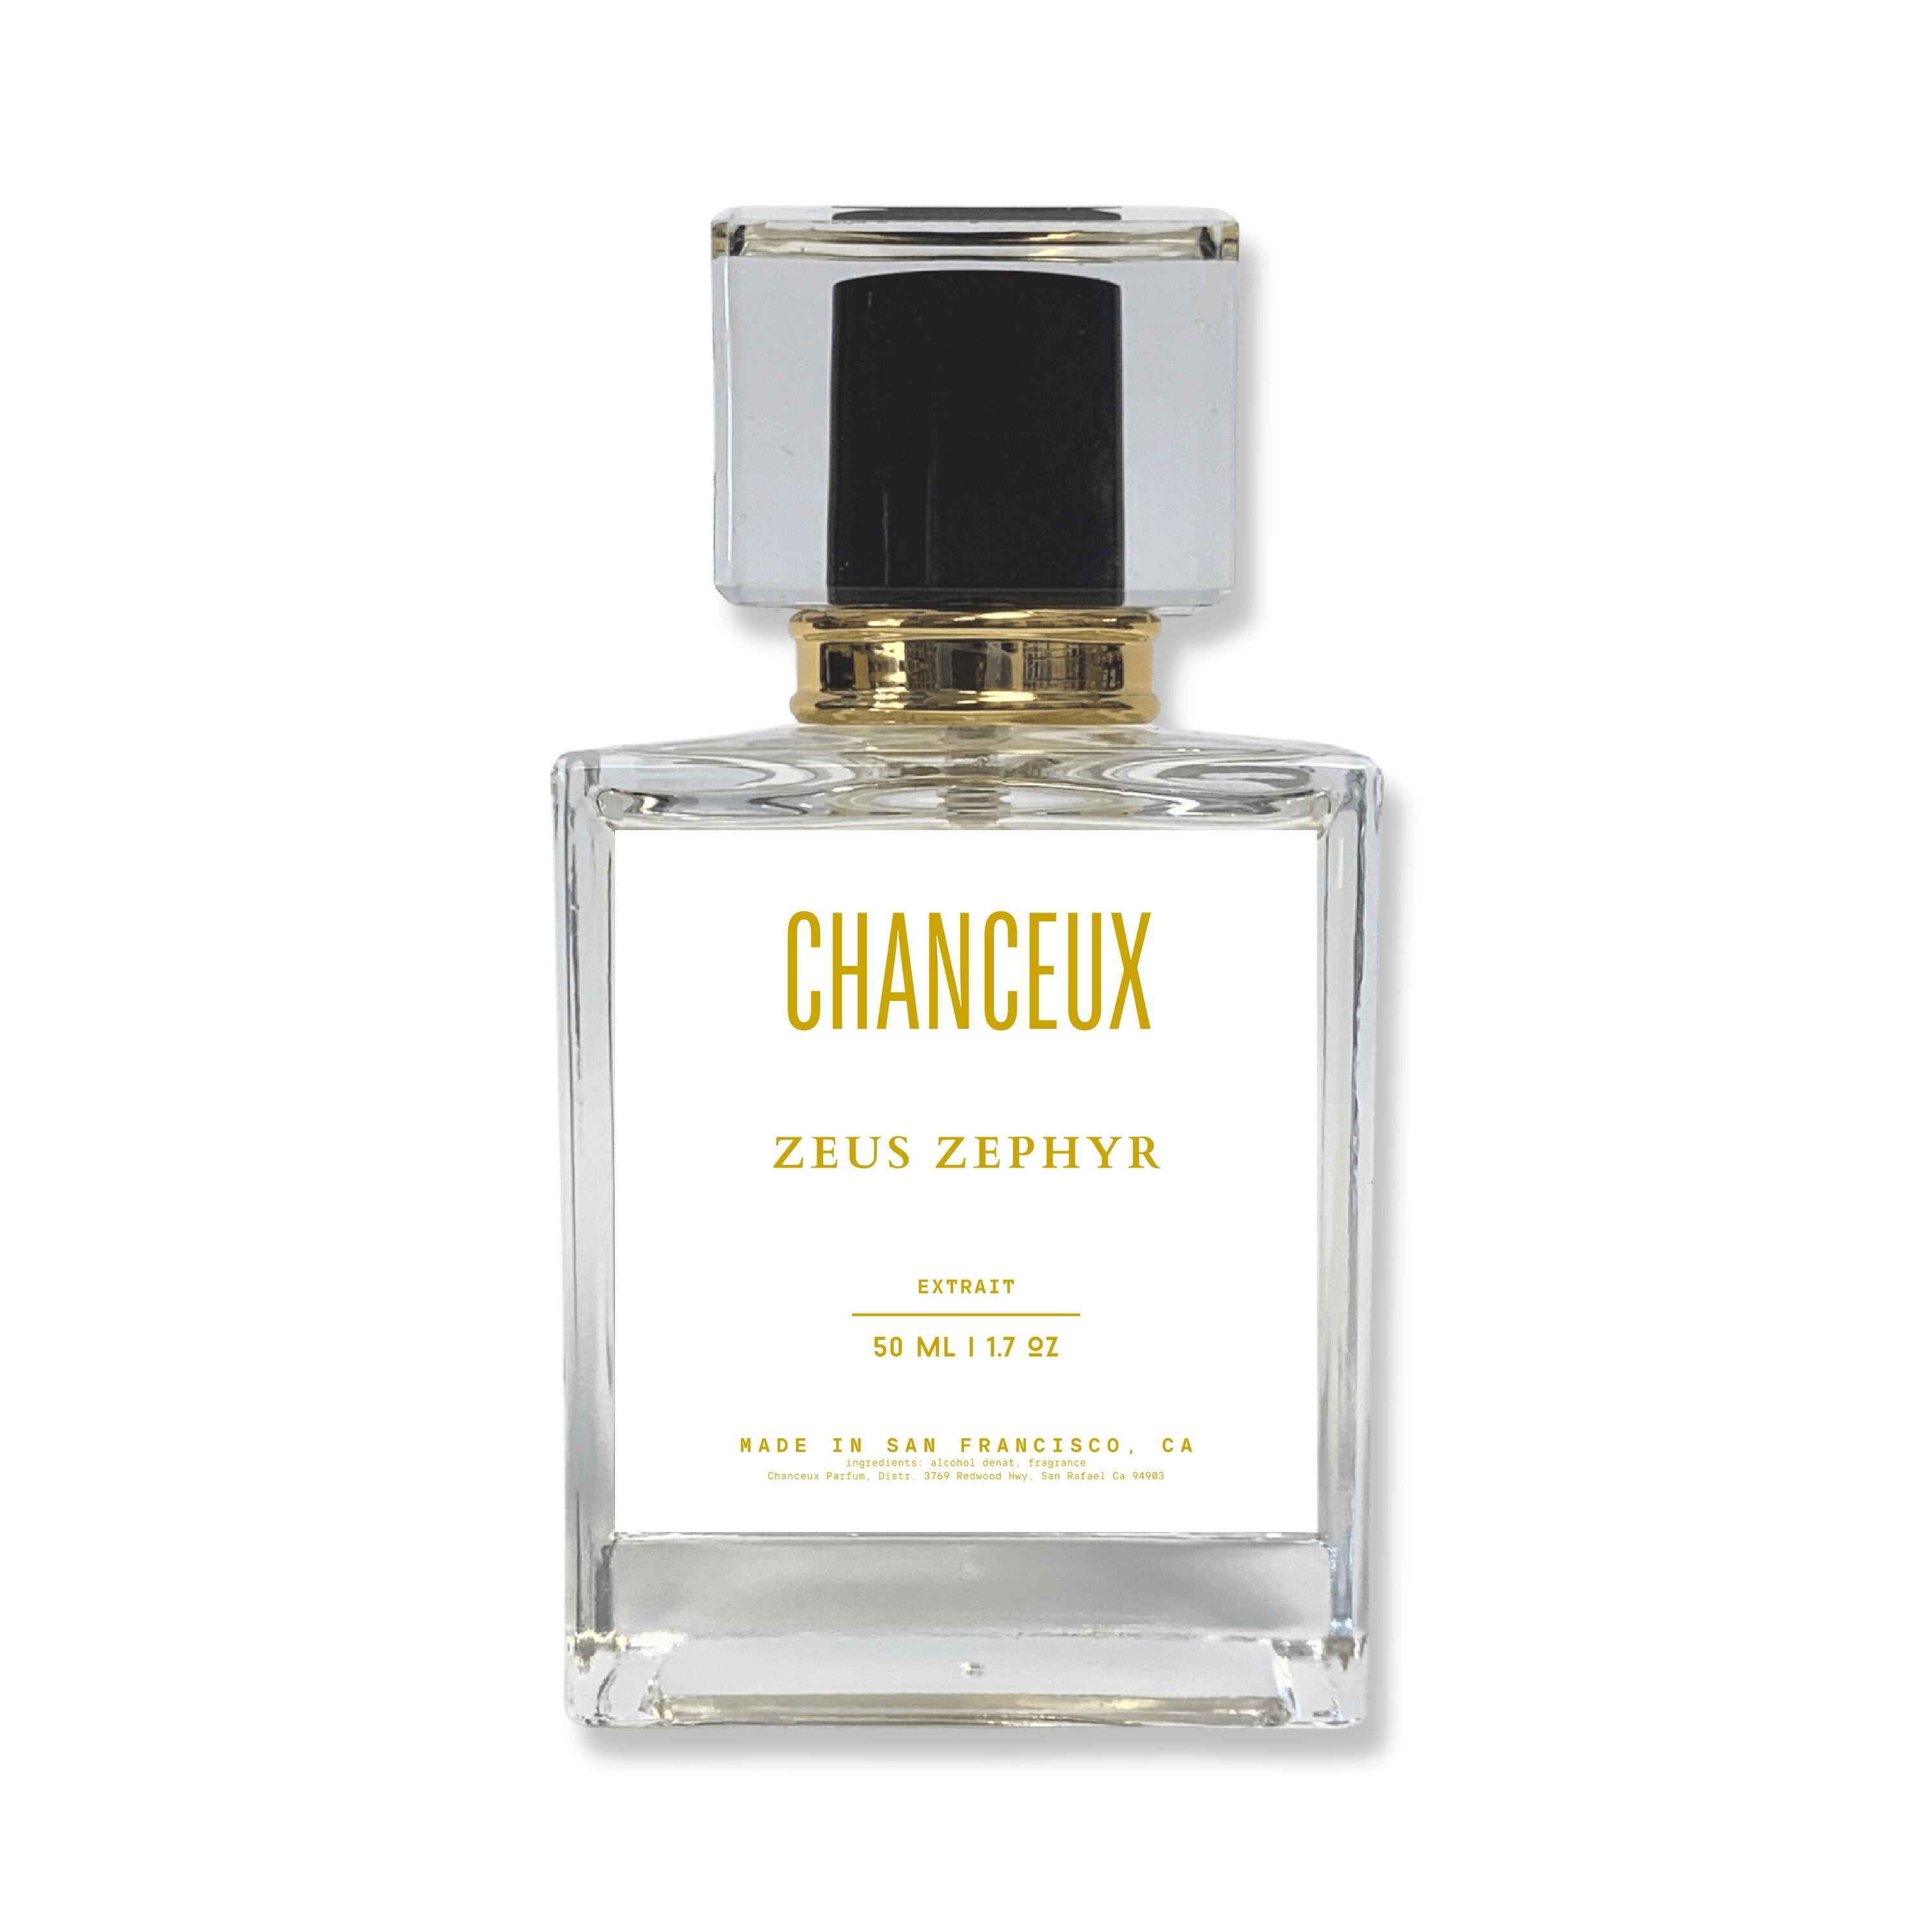 ZEUS ZEPHYR Chanceux Parfum 